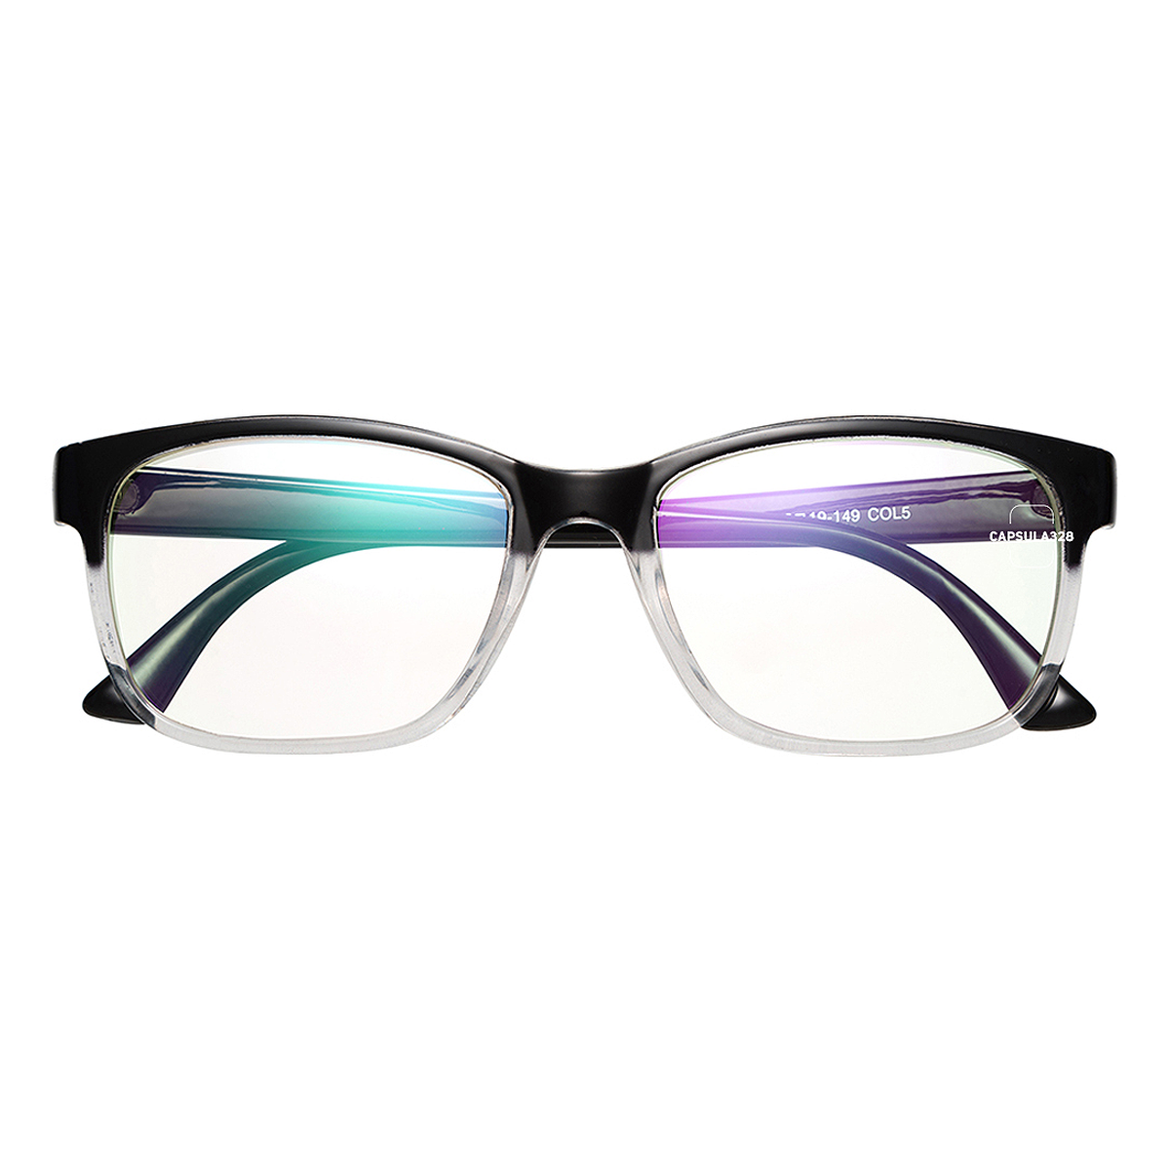 Іміджеві окуляри Wayfarer 2105